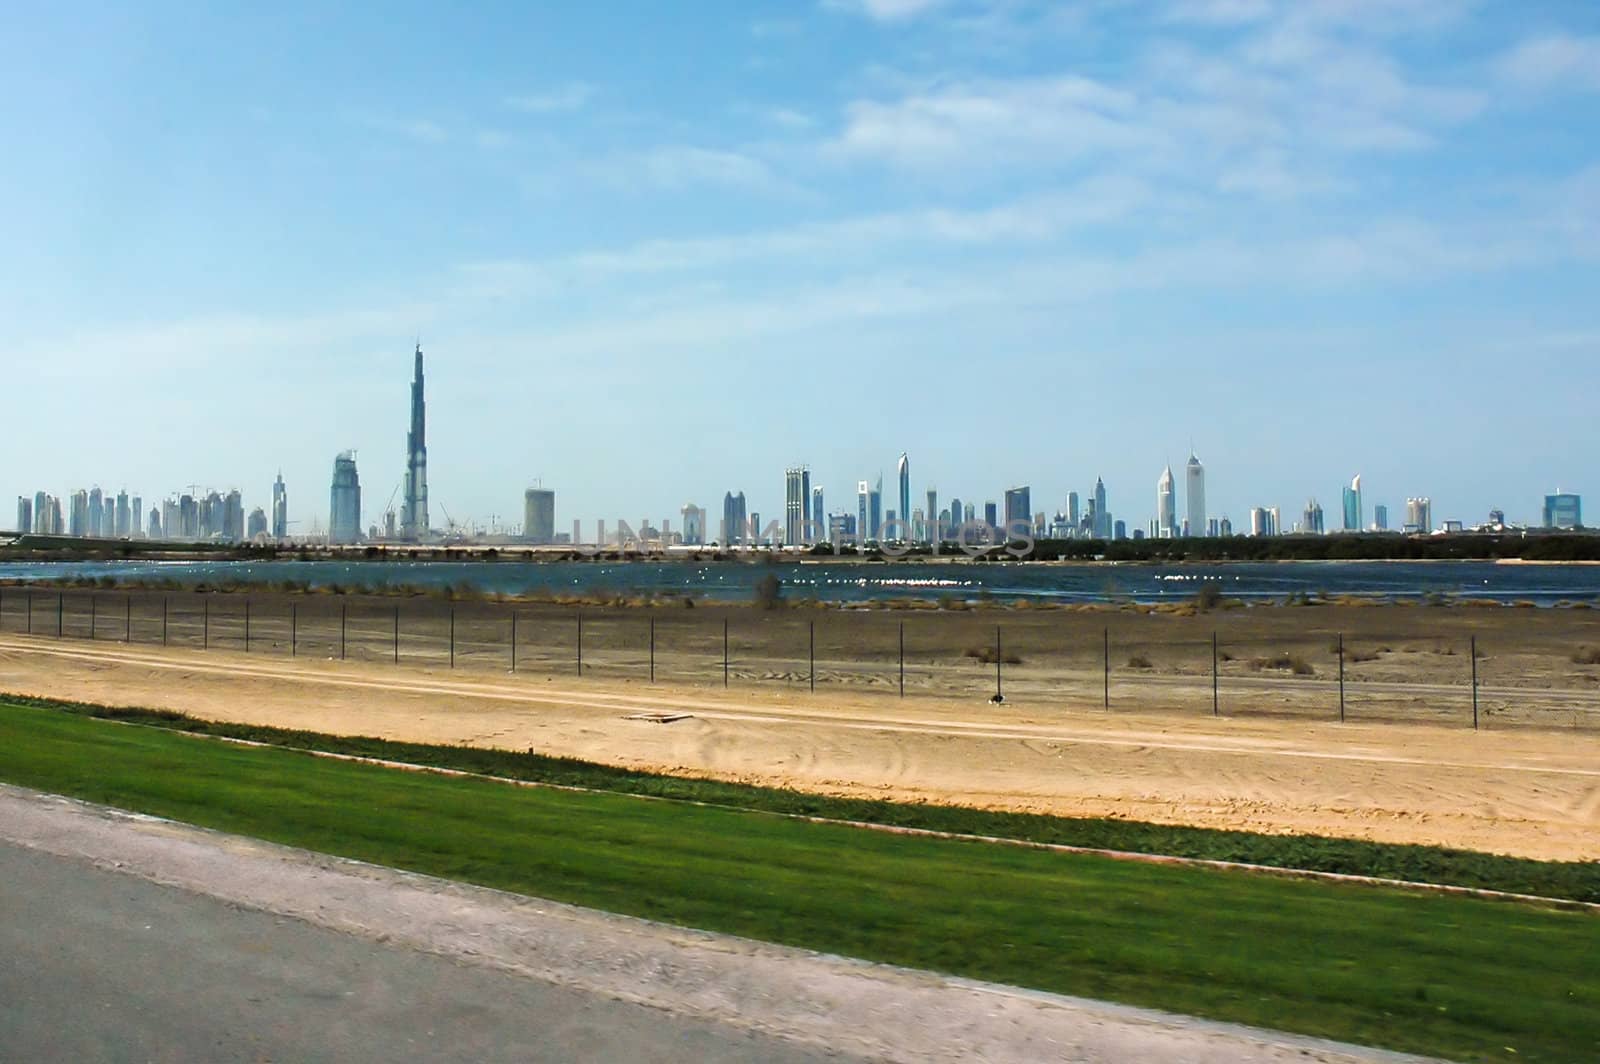 Dubai's cityscape with world's tallest building, Burj Dubai - 818m 162 flors